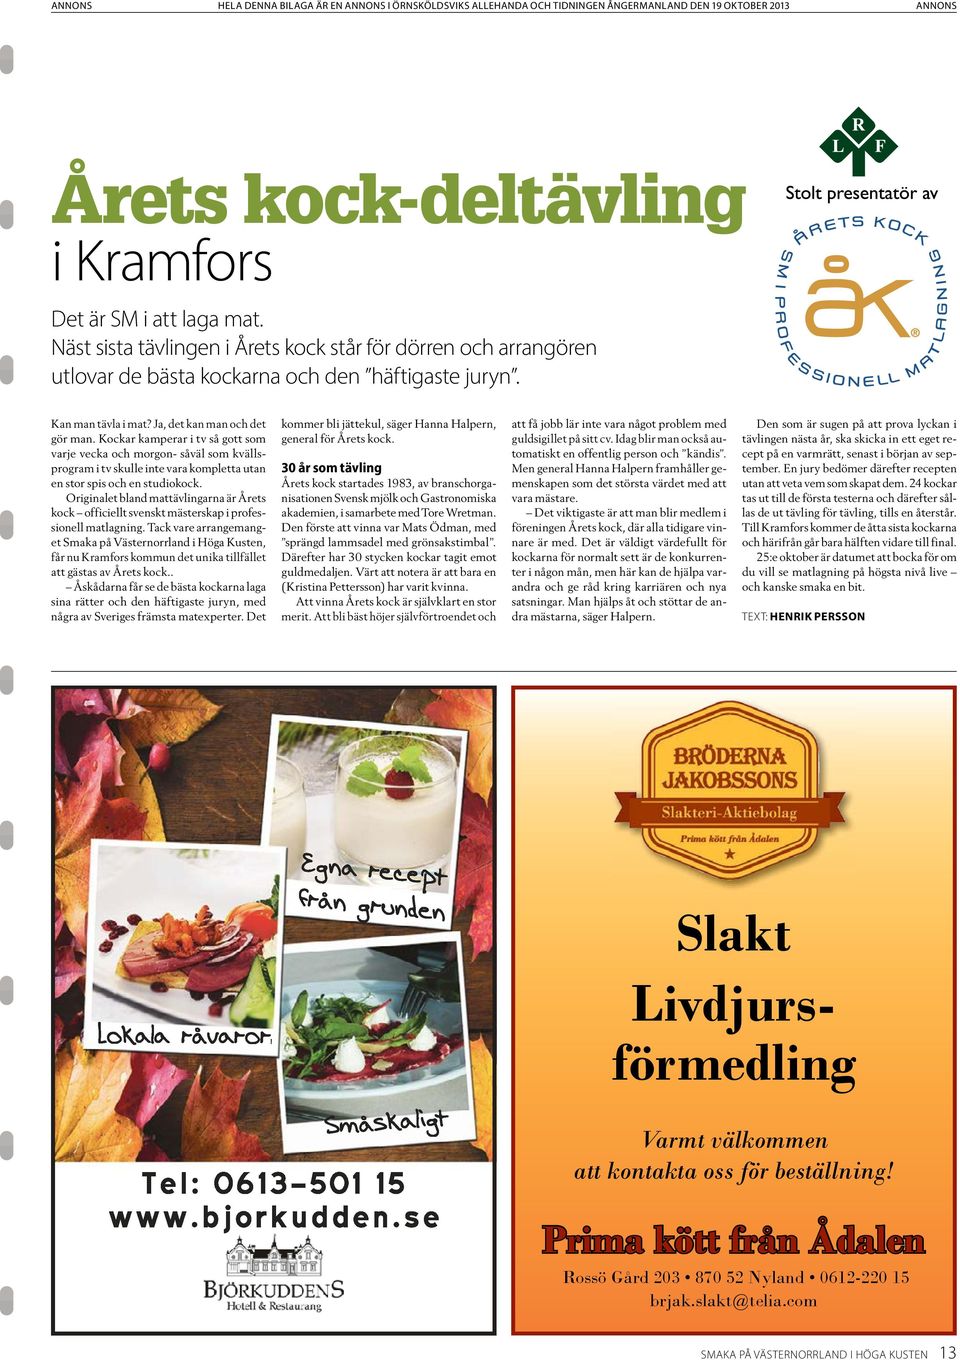 Originalet bland mattävlingarna är Årets kock officiellt svenskt mästerskap i professionell matlagning.